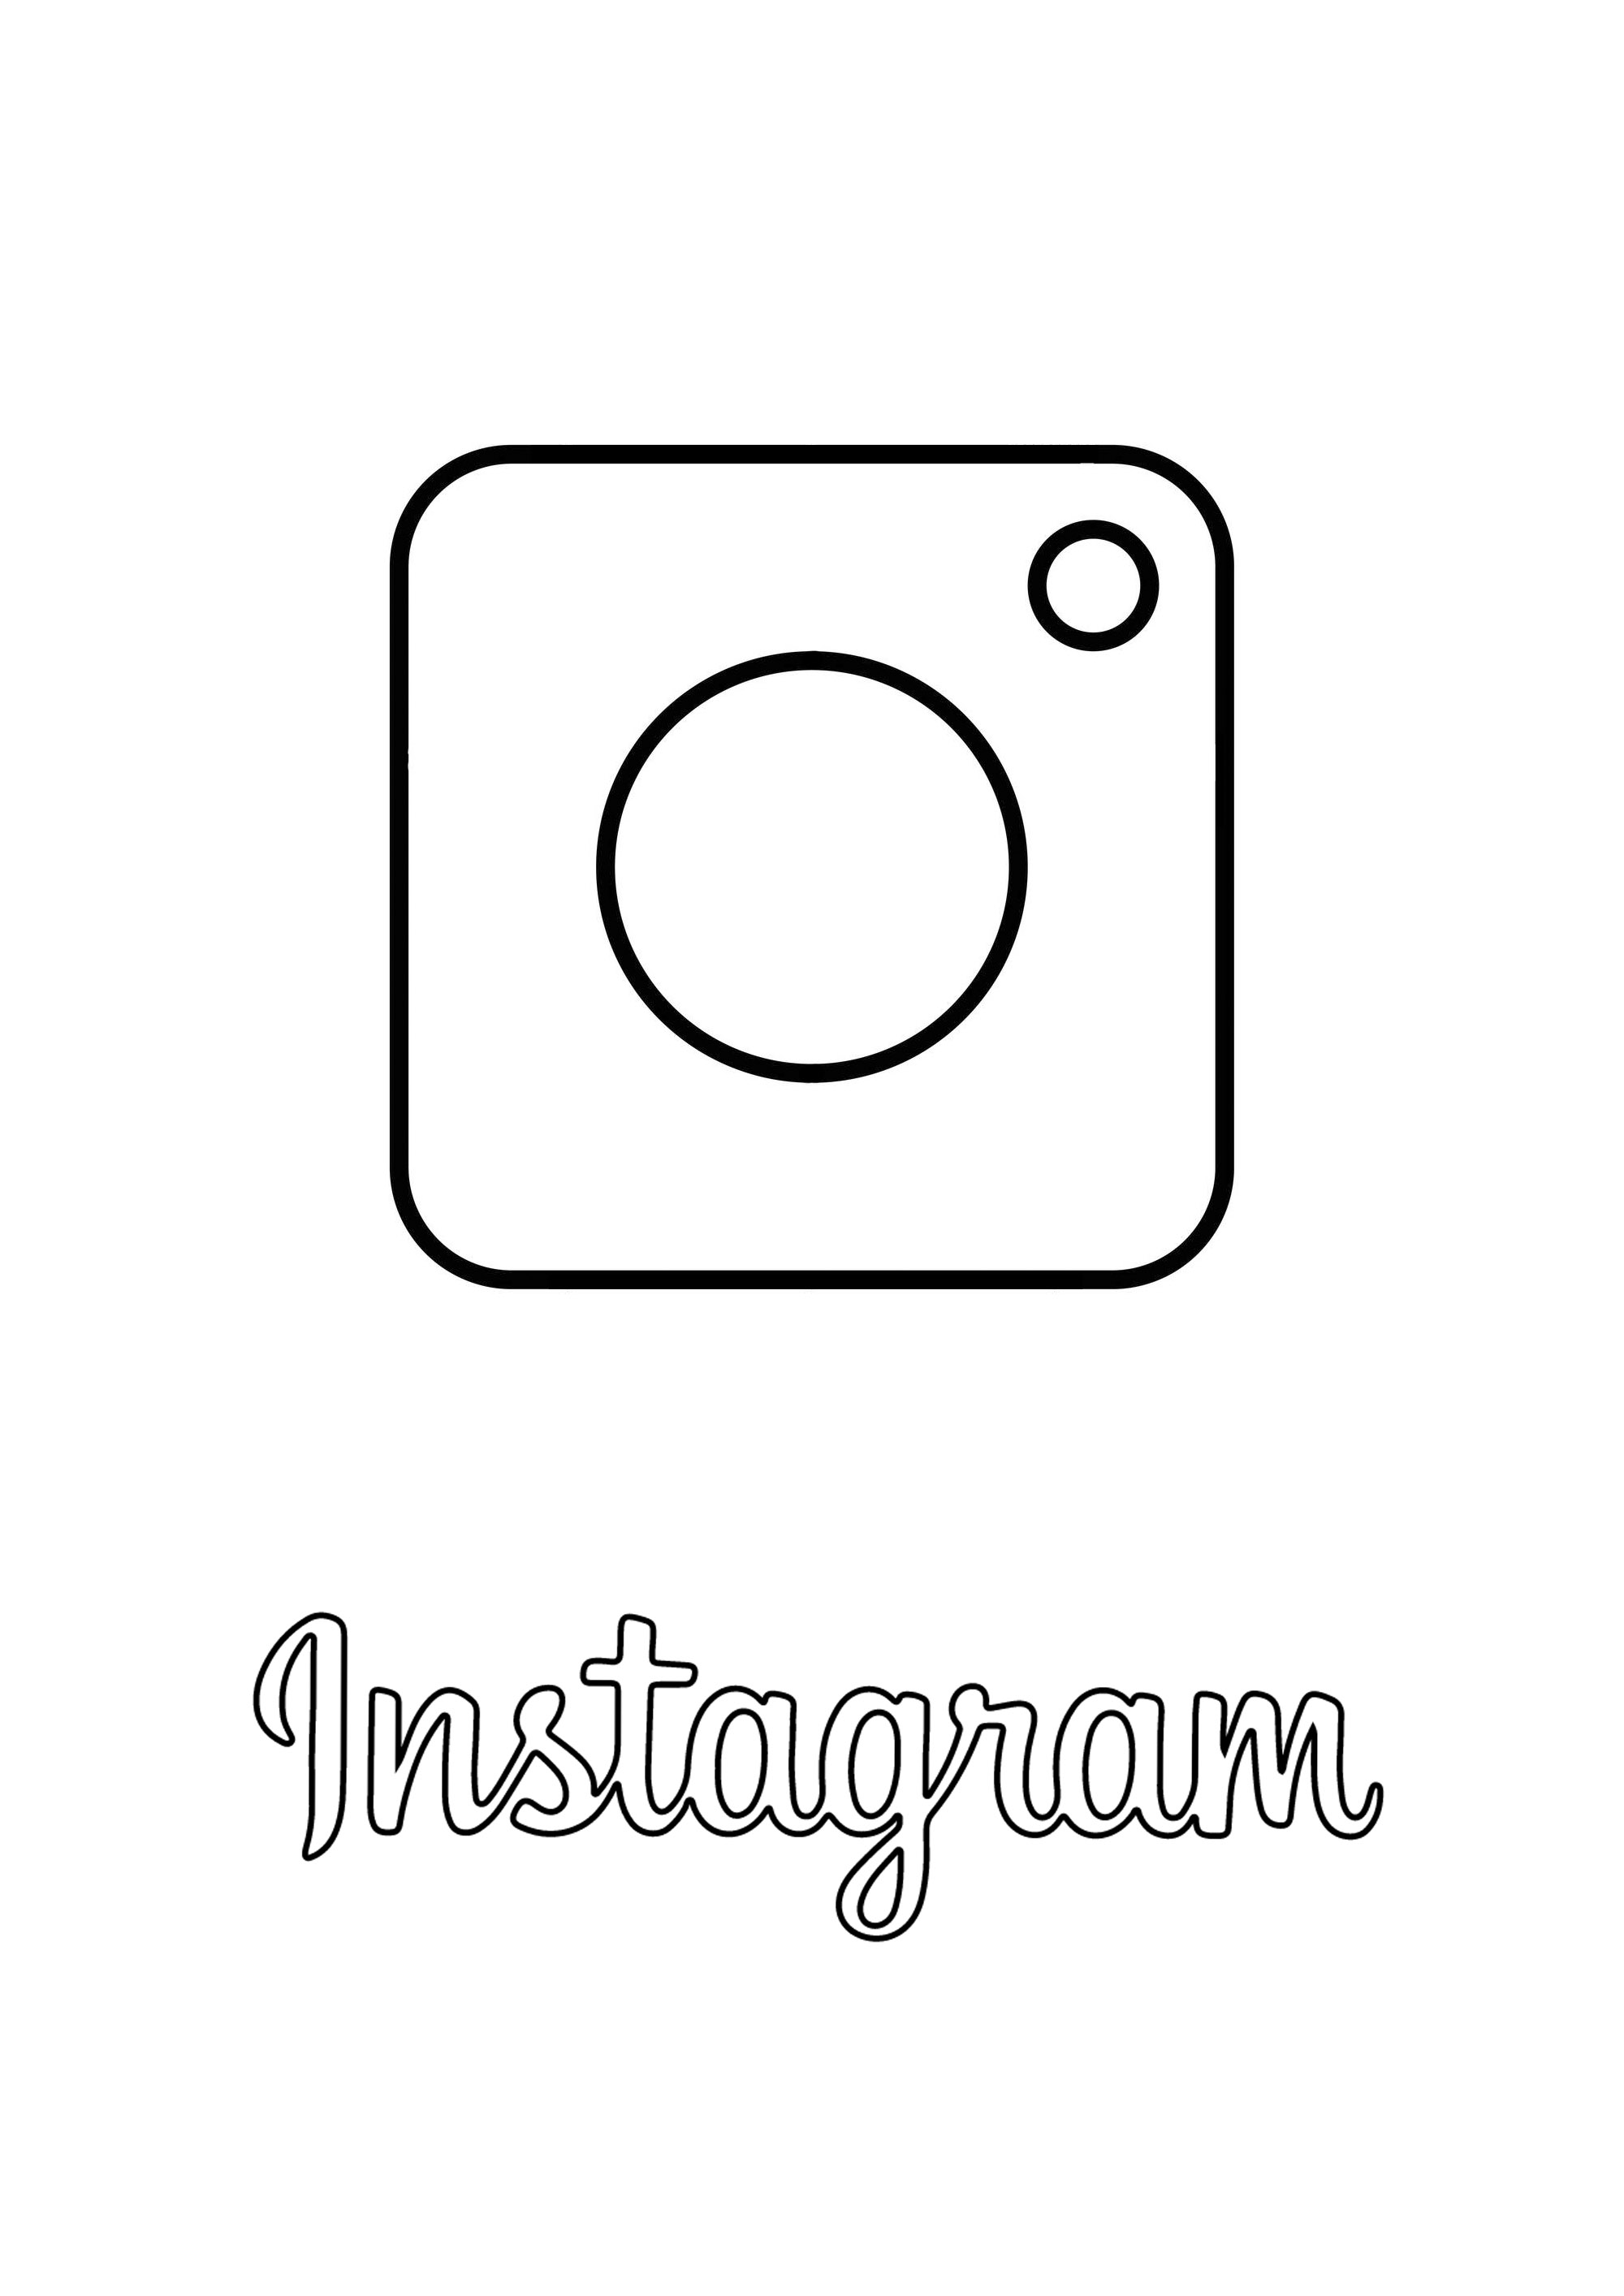 Logo d'Instagram à colorier. Instagram est une application, un réseau social et un service de partage de photos et de vidéos fondés et lancés en octobre 2010 par l'Américain Kevin Systrom et le Brésilien Michel Mike Krieger